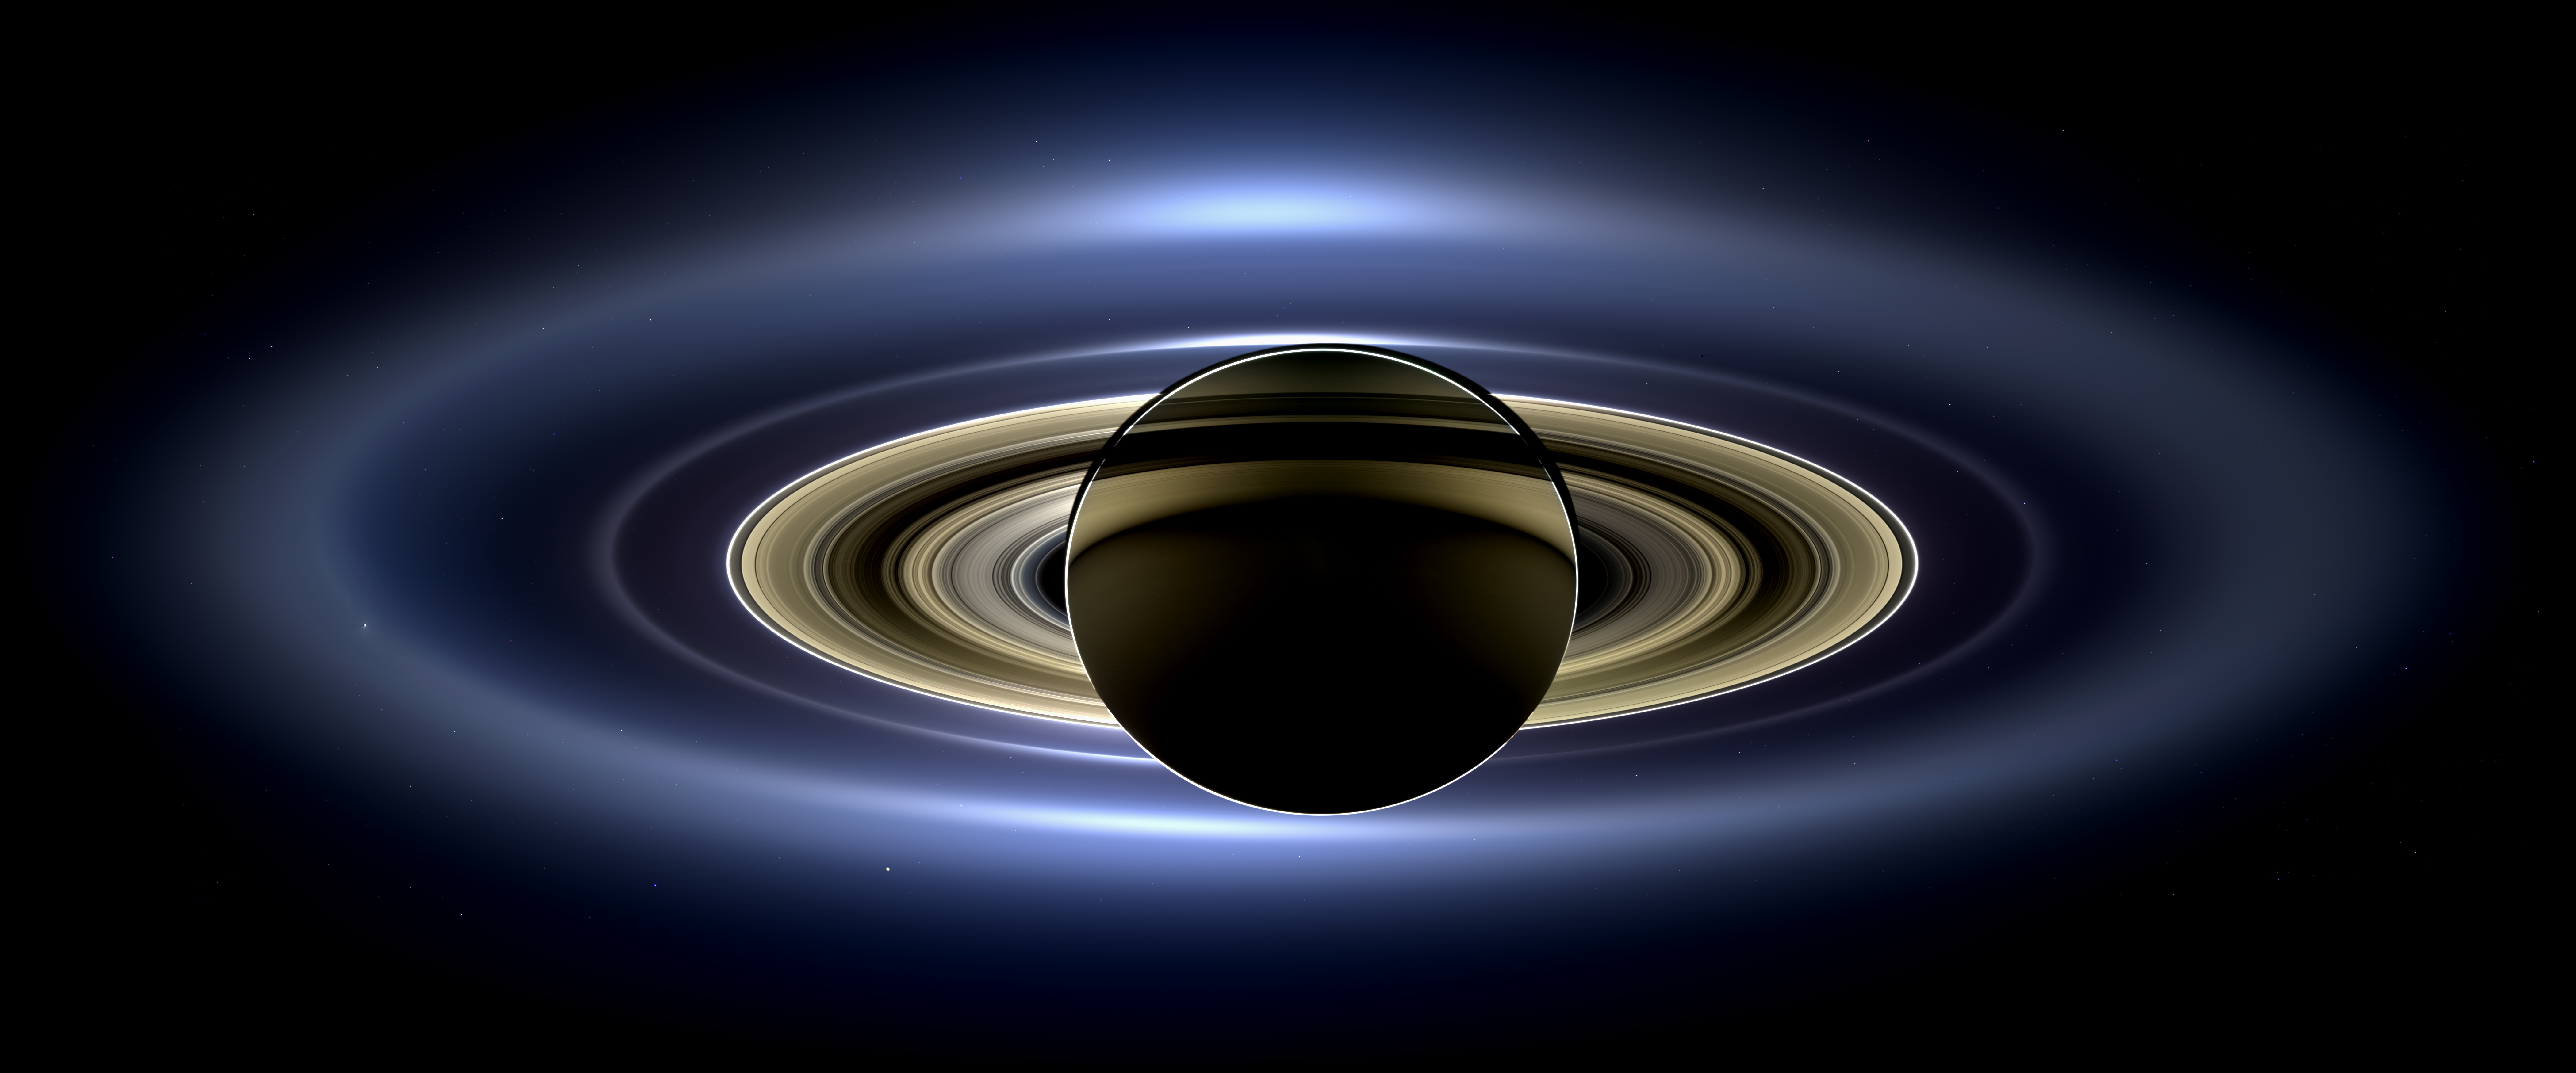 遮住了太阳的土星环。（2013 年，Cassini 探测器拍摄。来源：NASA/JPL/Space Science Institute ）